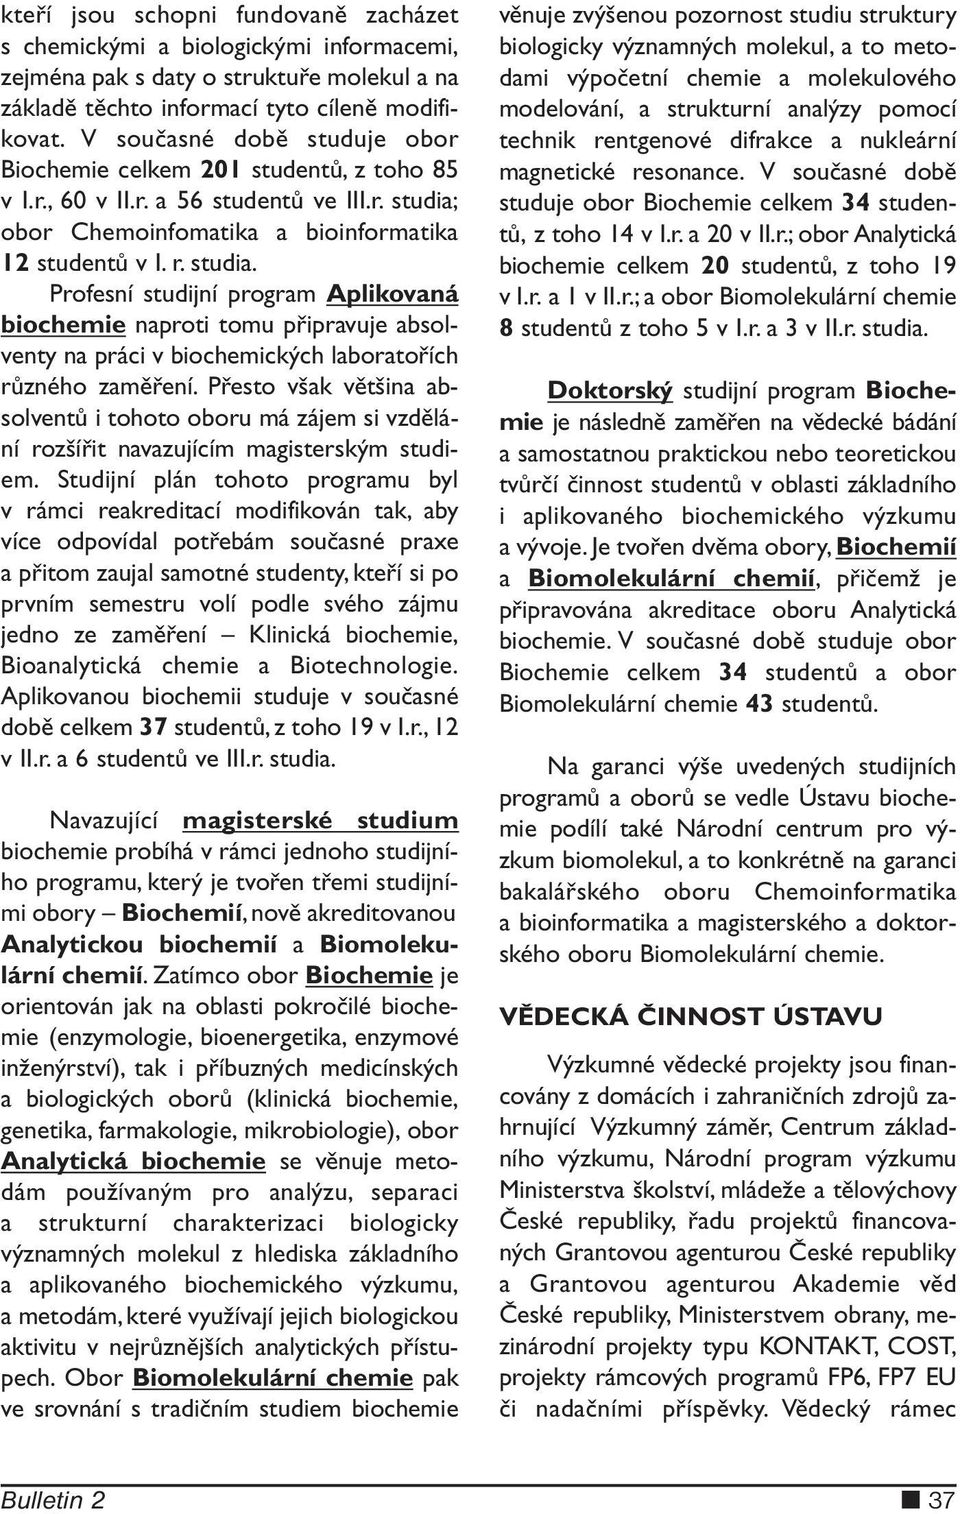 obor Chemoinfomatika a bioinformatika 12 studentů v I. r. studia.